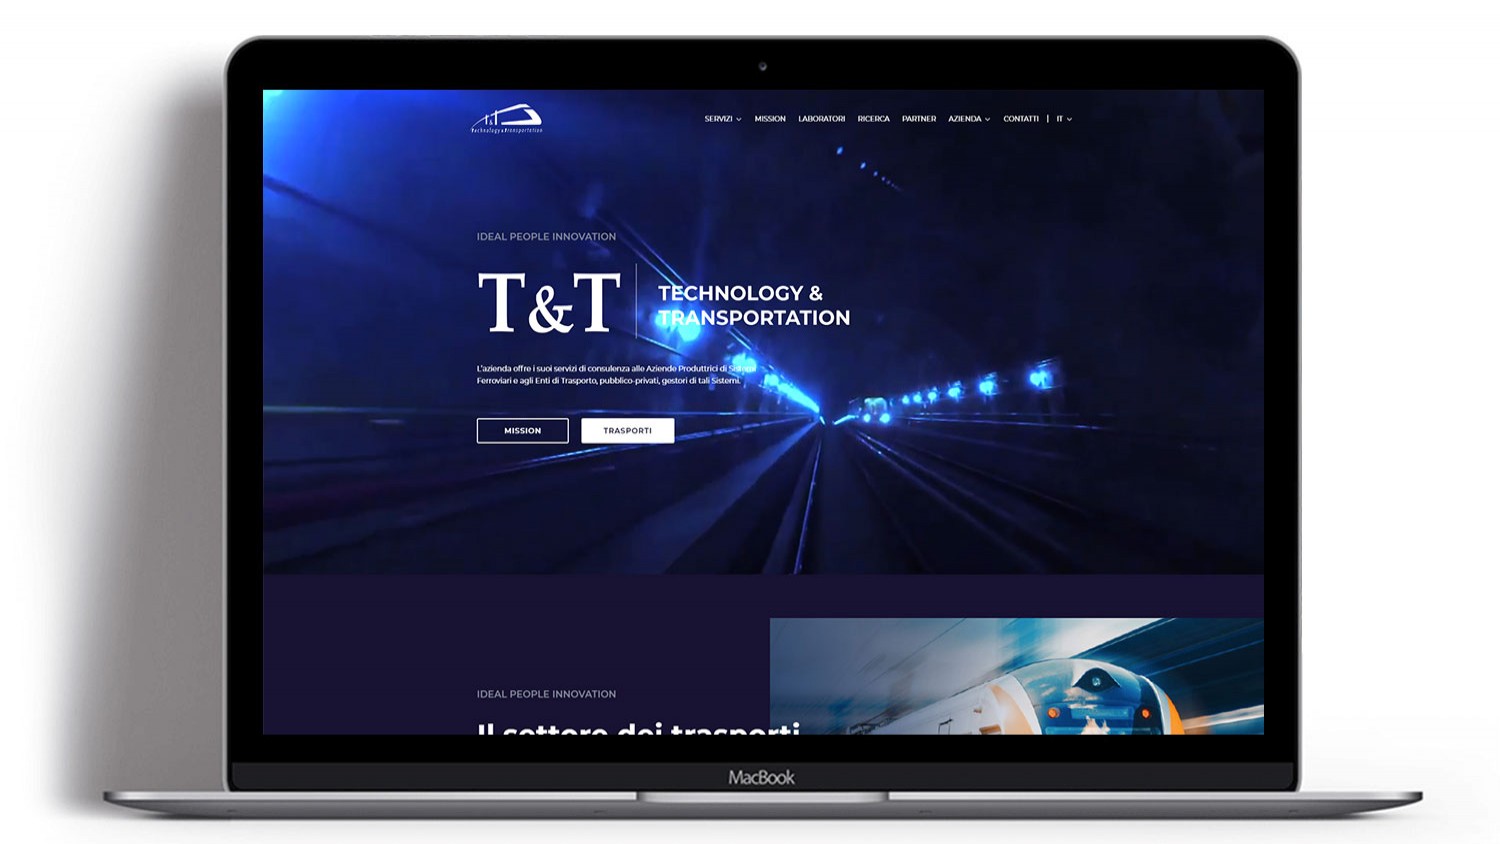 Syria Web Portfolio - T&T Technology & Transportation